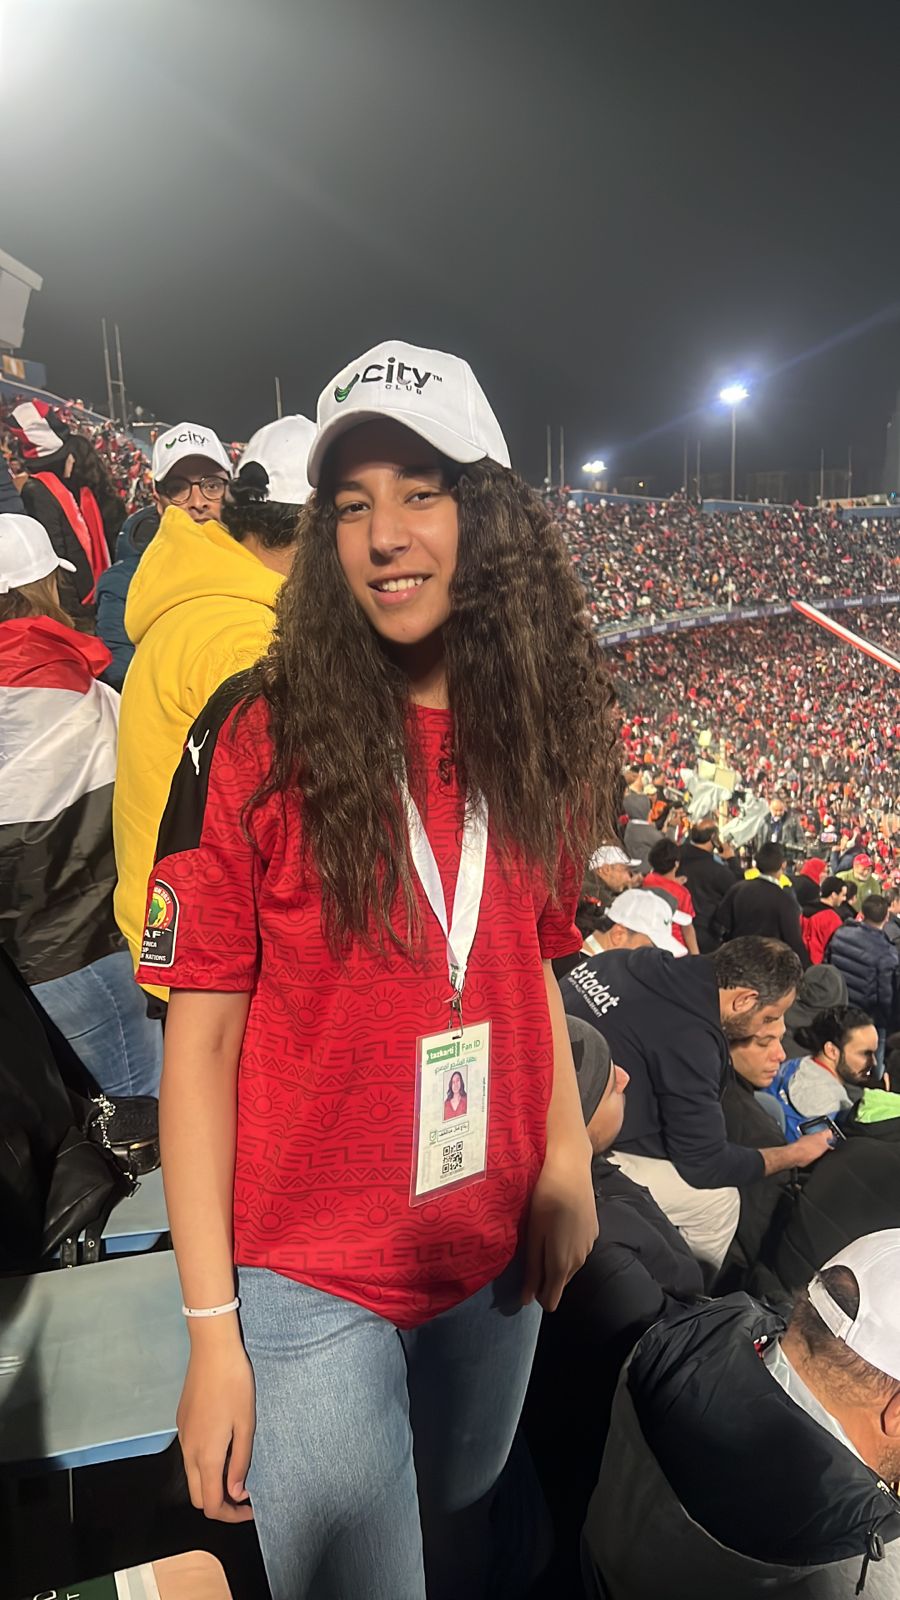 Cairo Stadium 002 (1)